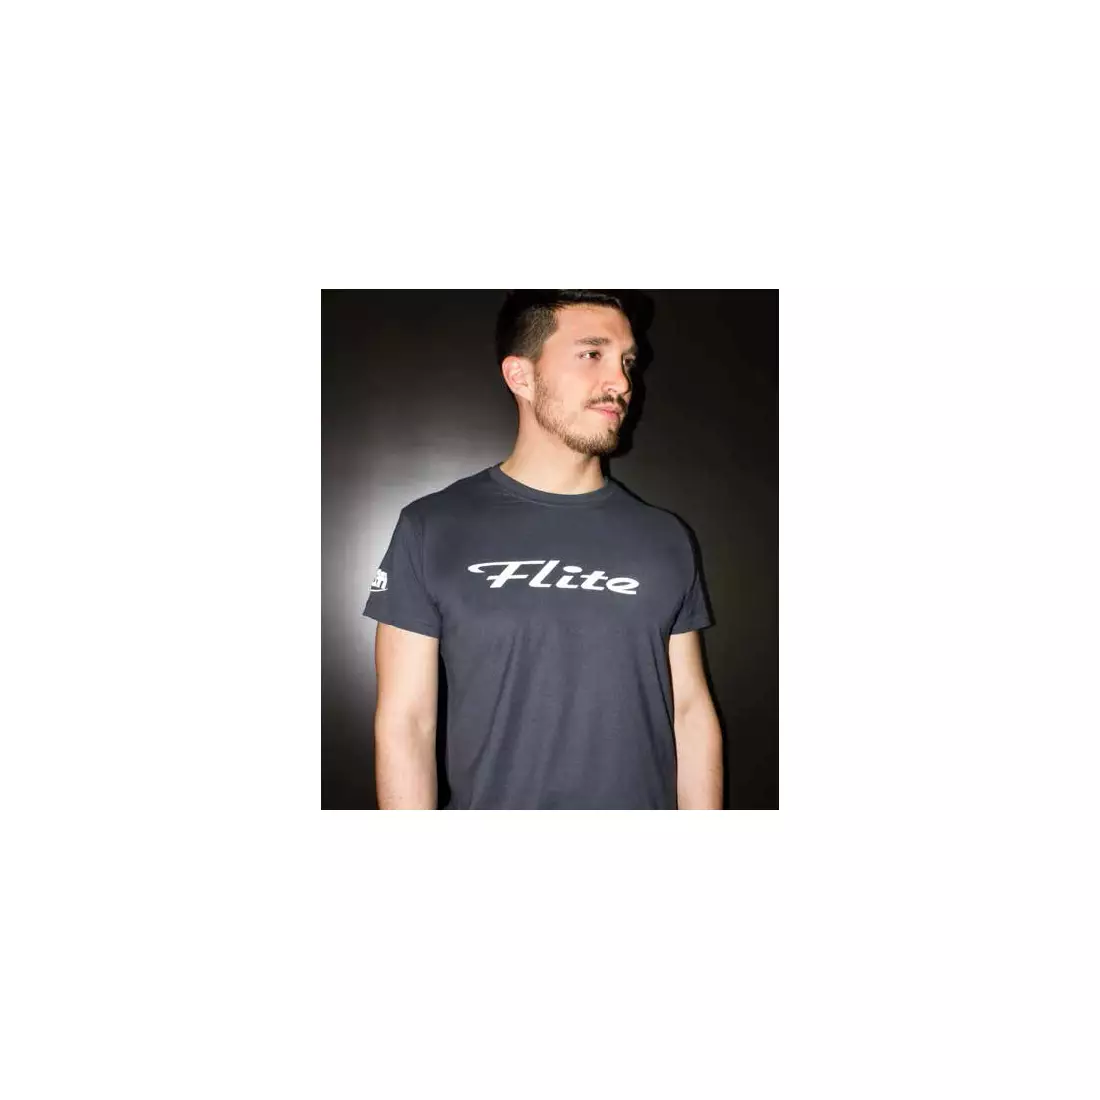 SELLE ITALIA men's short-sleeved shirt FLITE antracite grey SIT-98541S0000006